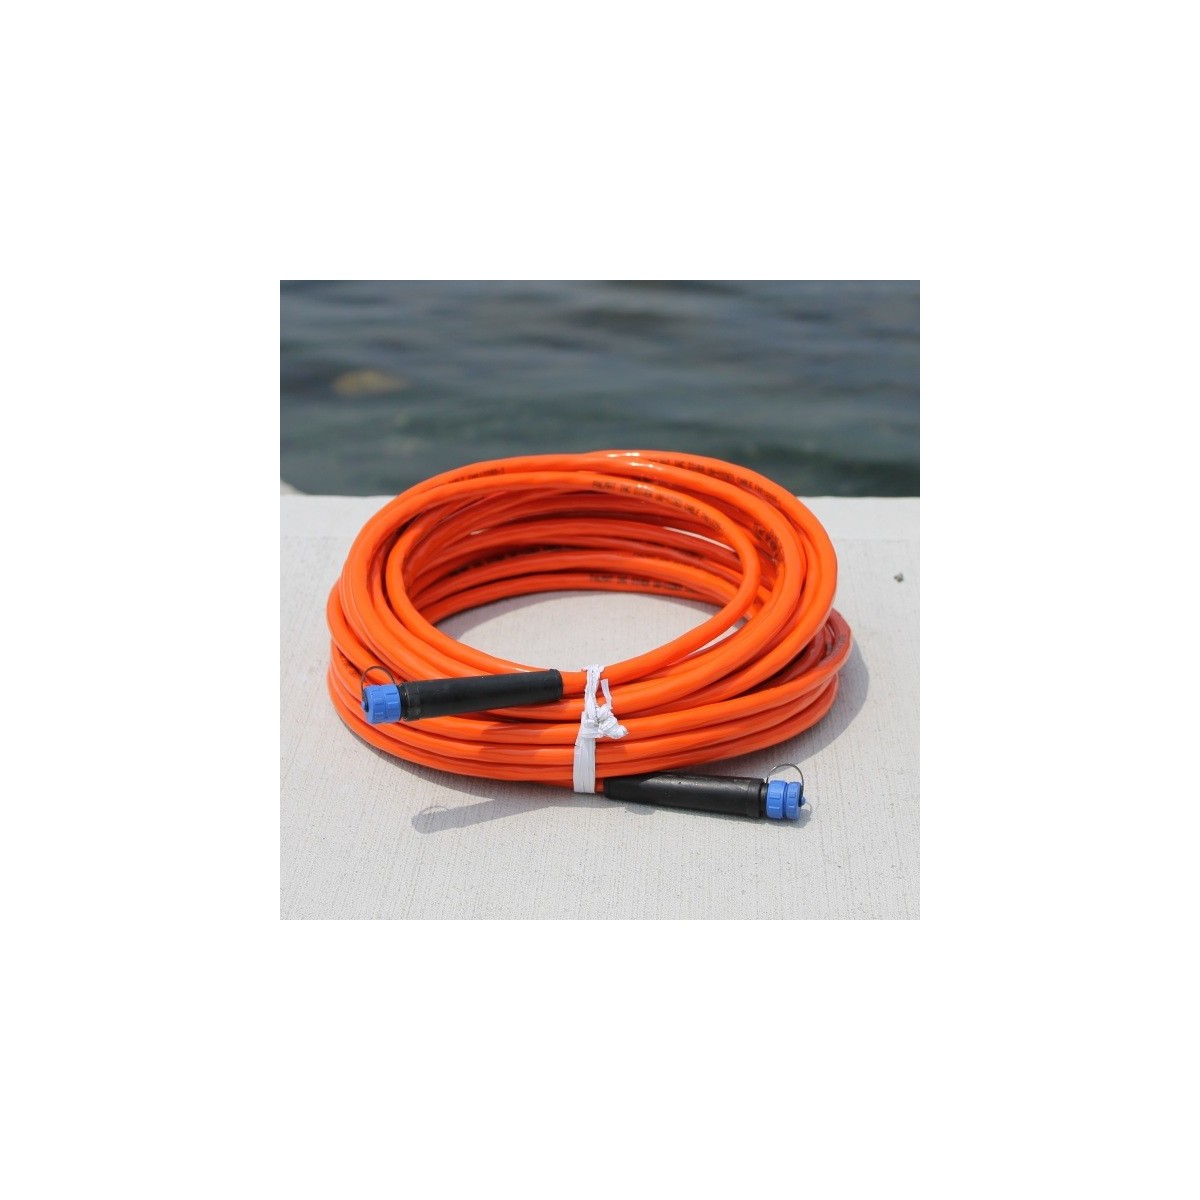 Aquabotix 150' Cable for AquaLens Pro